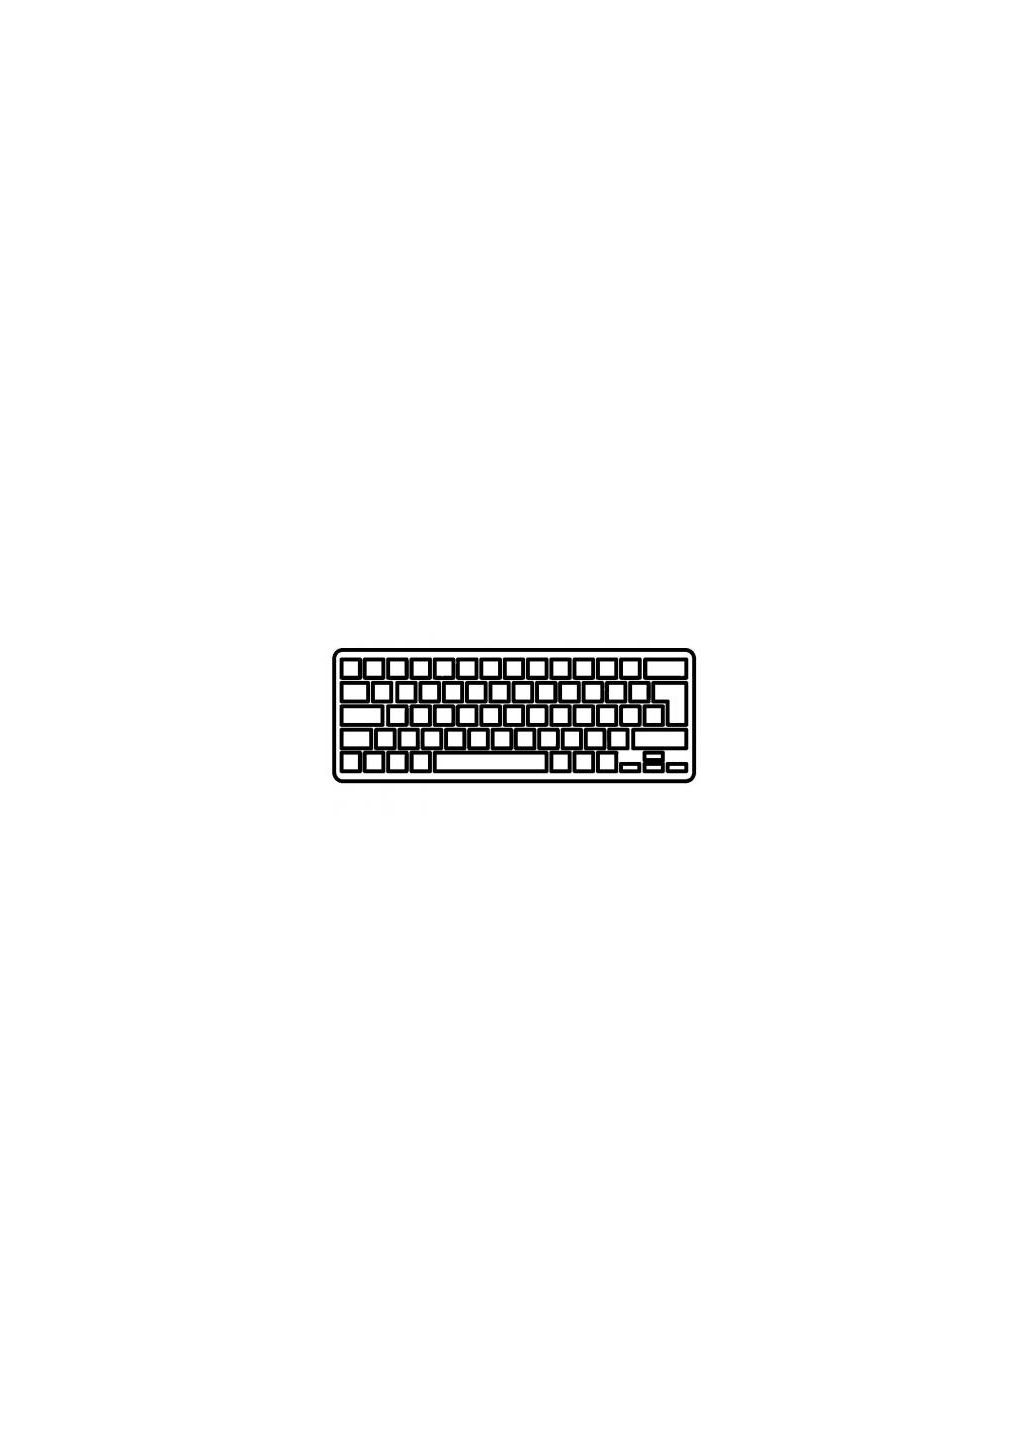 Клавиатура ноутбука Mini 2101000 Series белая UA (A43526) HP mini 210-1000 series белая ua (276706752)